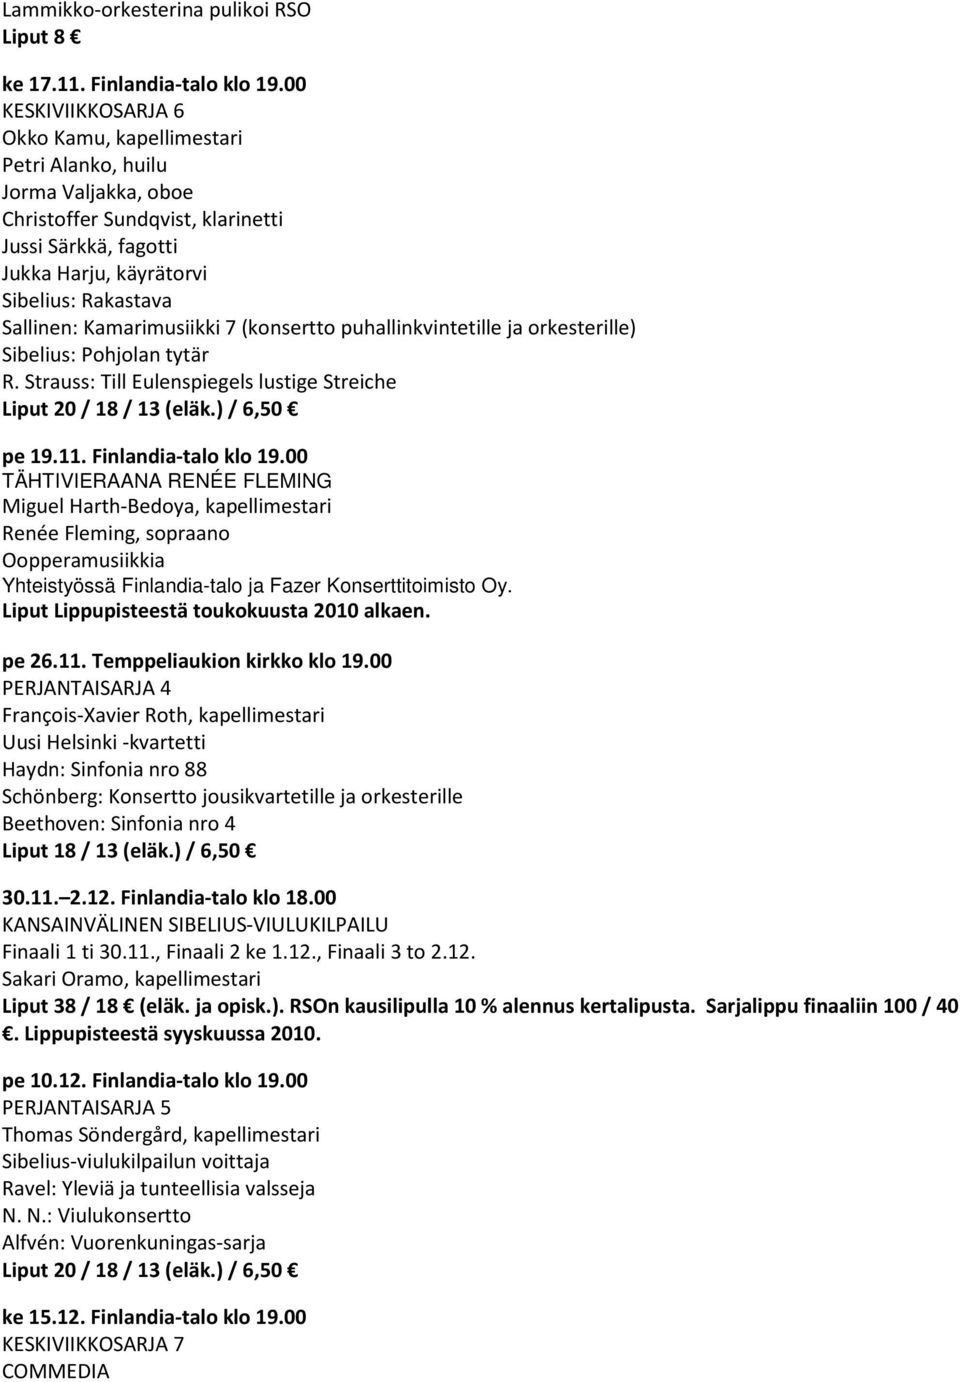 Kamarimusiikki 7 (konsertto puhallinkvintetille ja orkesterille) Sibelius: Pohjolan tytär R. Strauss: Till Eulenspiegels lustige Streiche pe 19.11. Finlandia-talo klo 19.